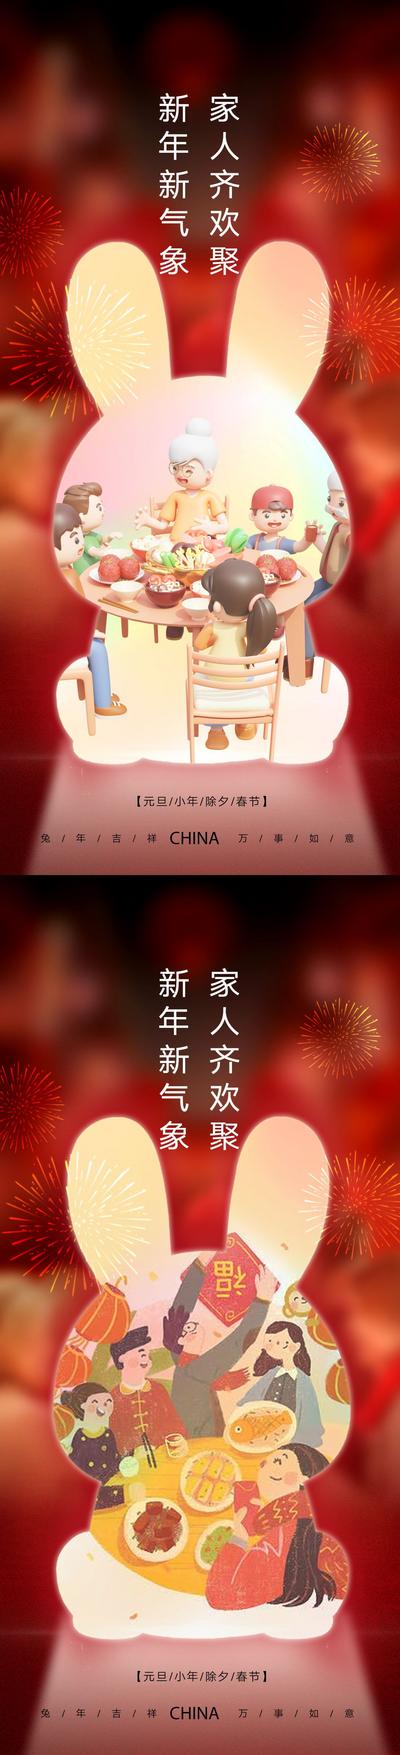 【南门网】海报 公历节日 中国传统节日  元旦 兔年 春节 小年 新年  兔子 舞狮 剪纸 插画 系列